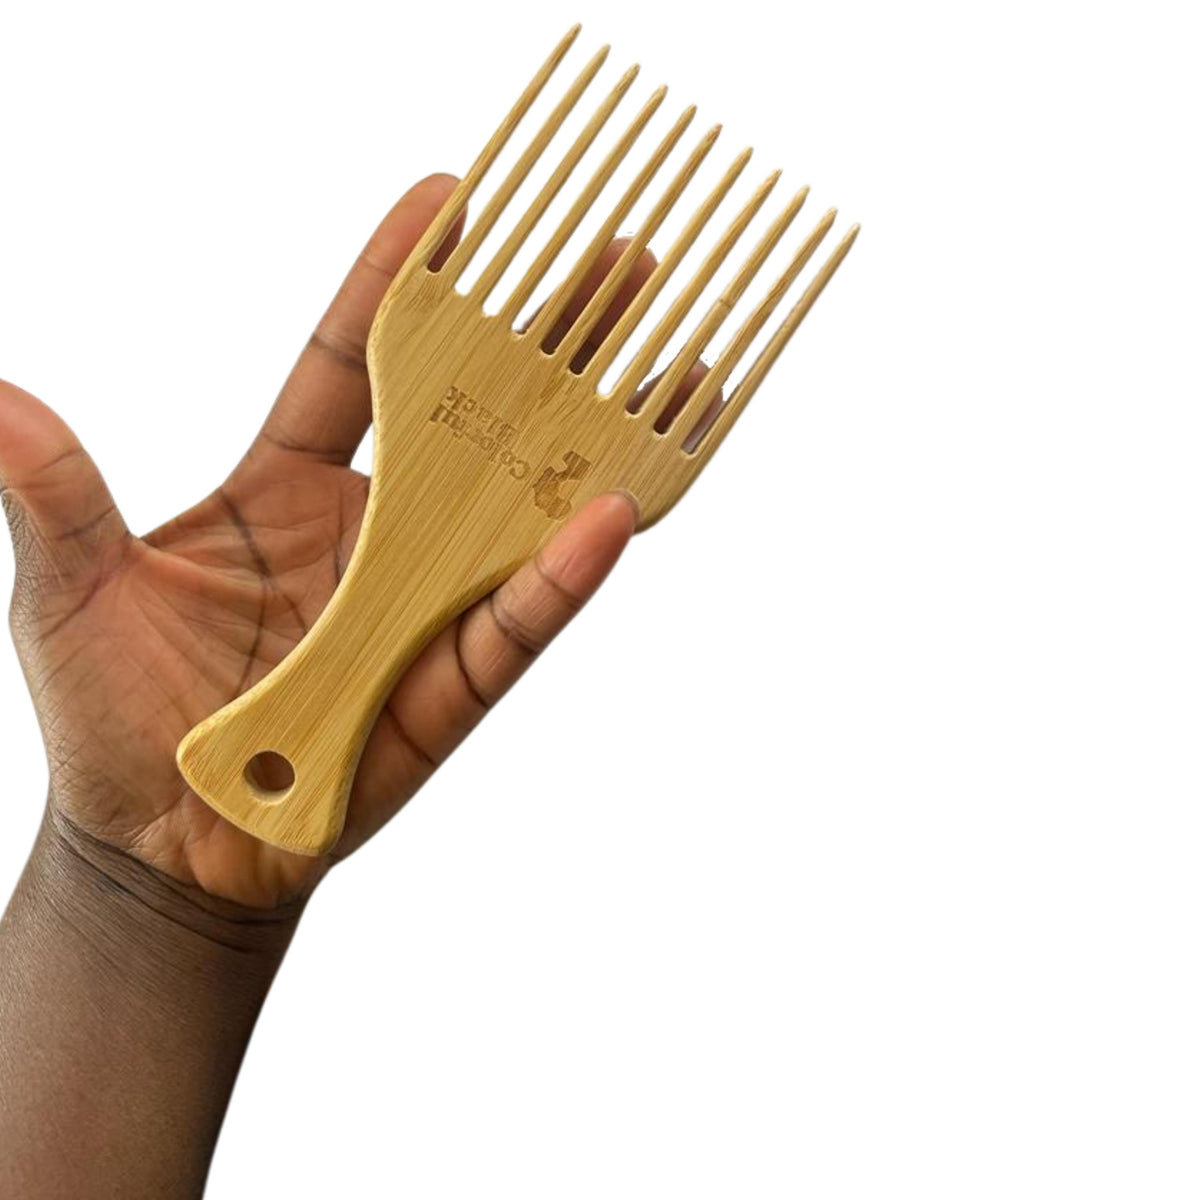 Indispensable pour démêler les cheveux courts et pour créer du volume aux racines. Pour la coiffure afro ou pour la définition de boucles sur cheveux bouclés.